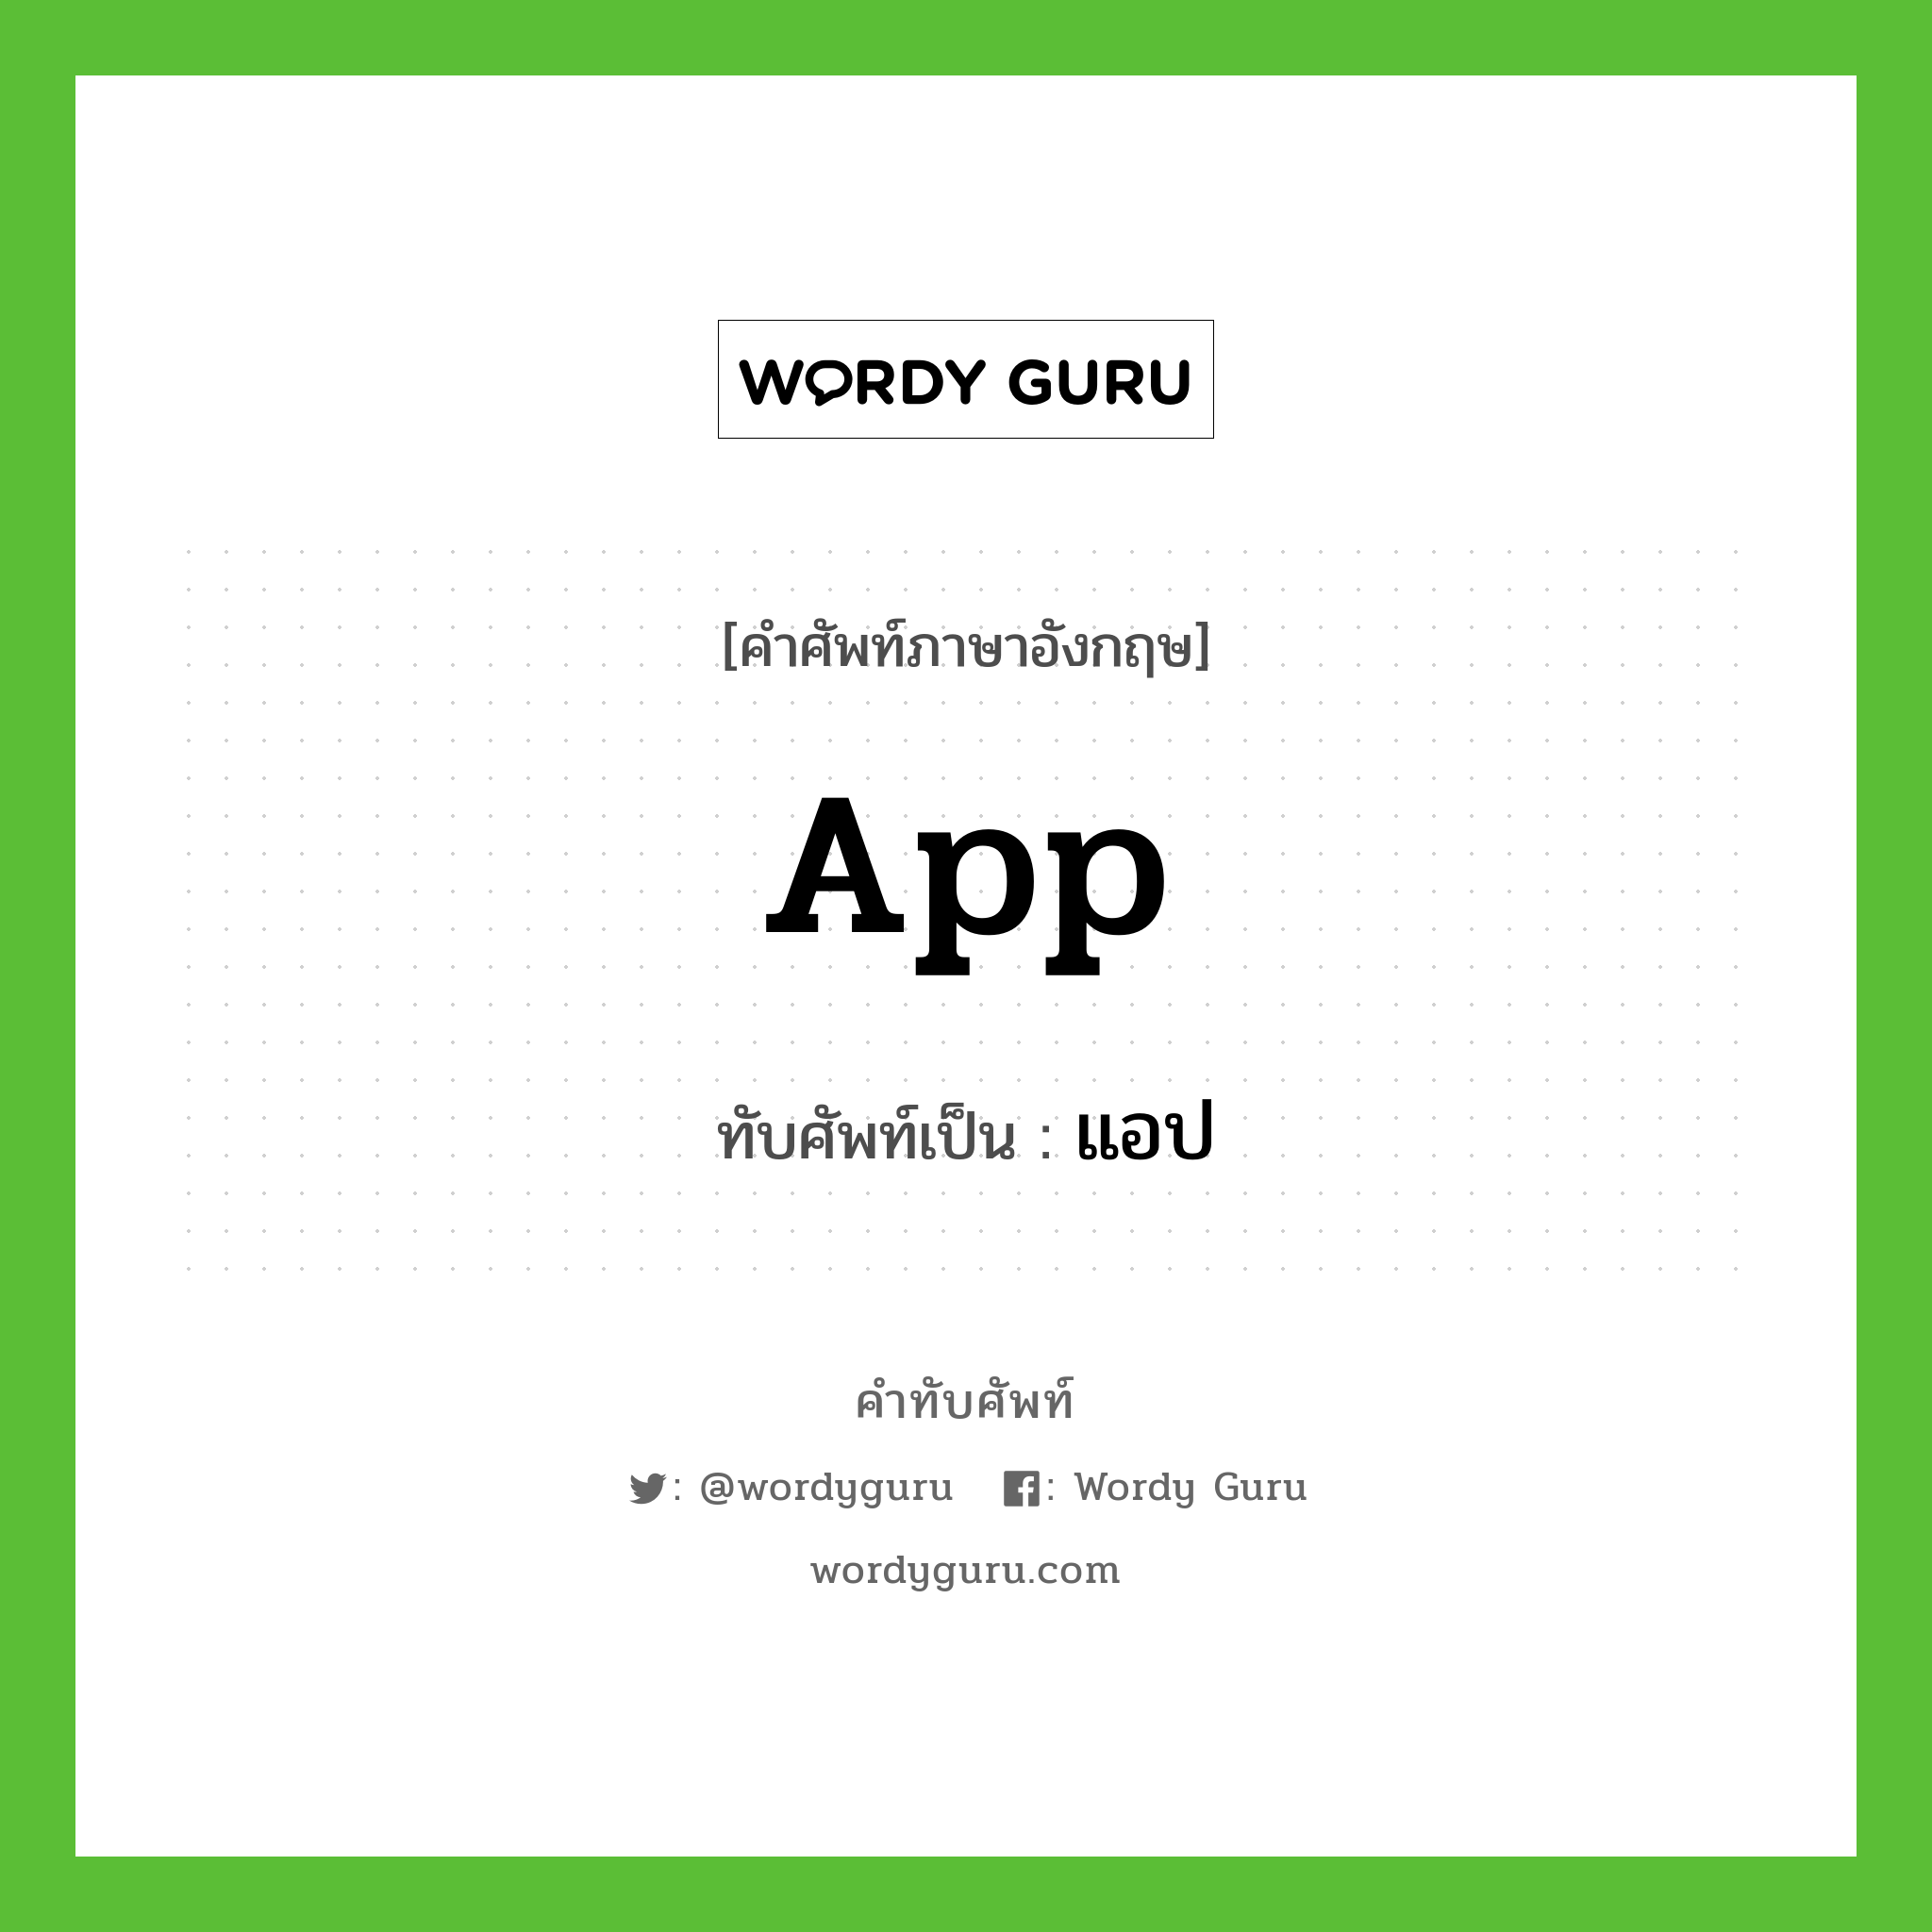 app เขียนเป็นคำไทยว่าอะไร?, คำศัพท์ภาษาอังกฤษ app ทับศัพท์เป็น แอป